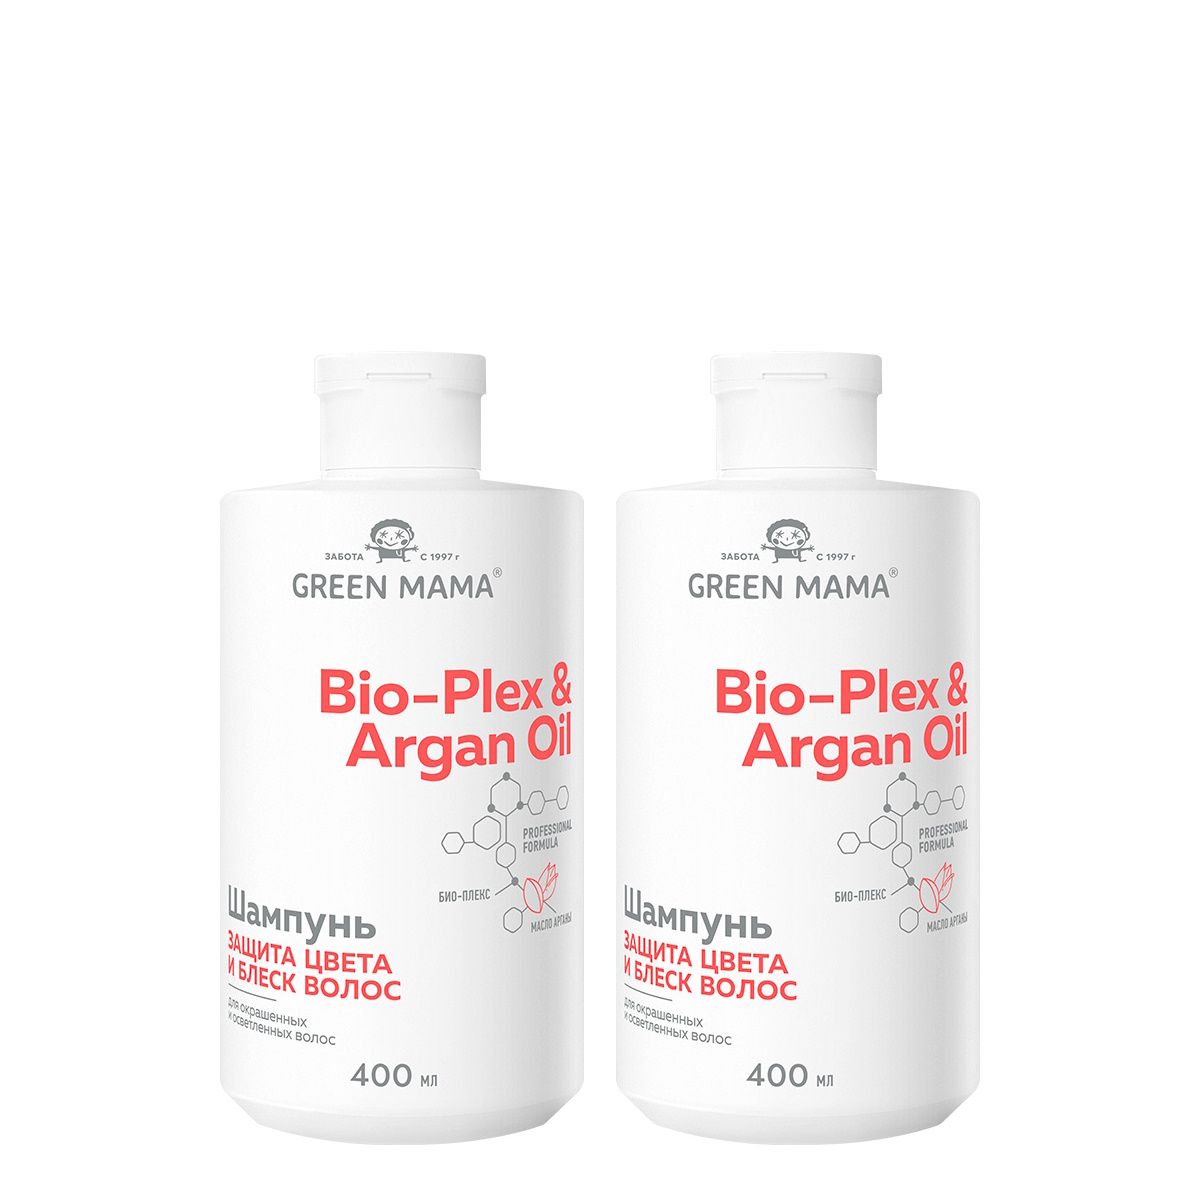 Шампунь для защиты цвета Green Mama BioPlex & Argan Oil 400 мл 2 шт путешествия с тетушкой комедианты грин г